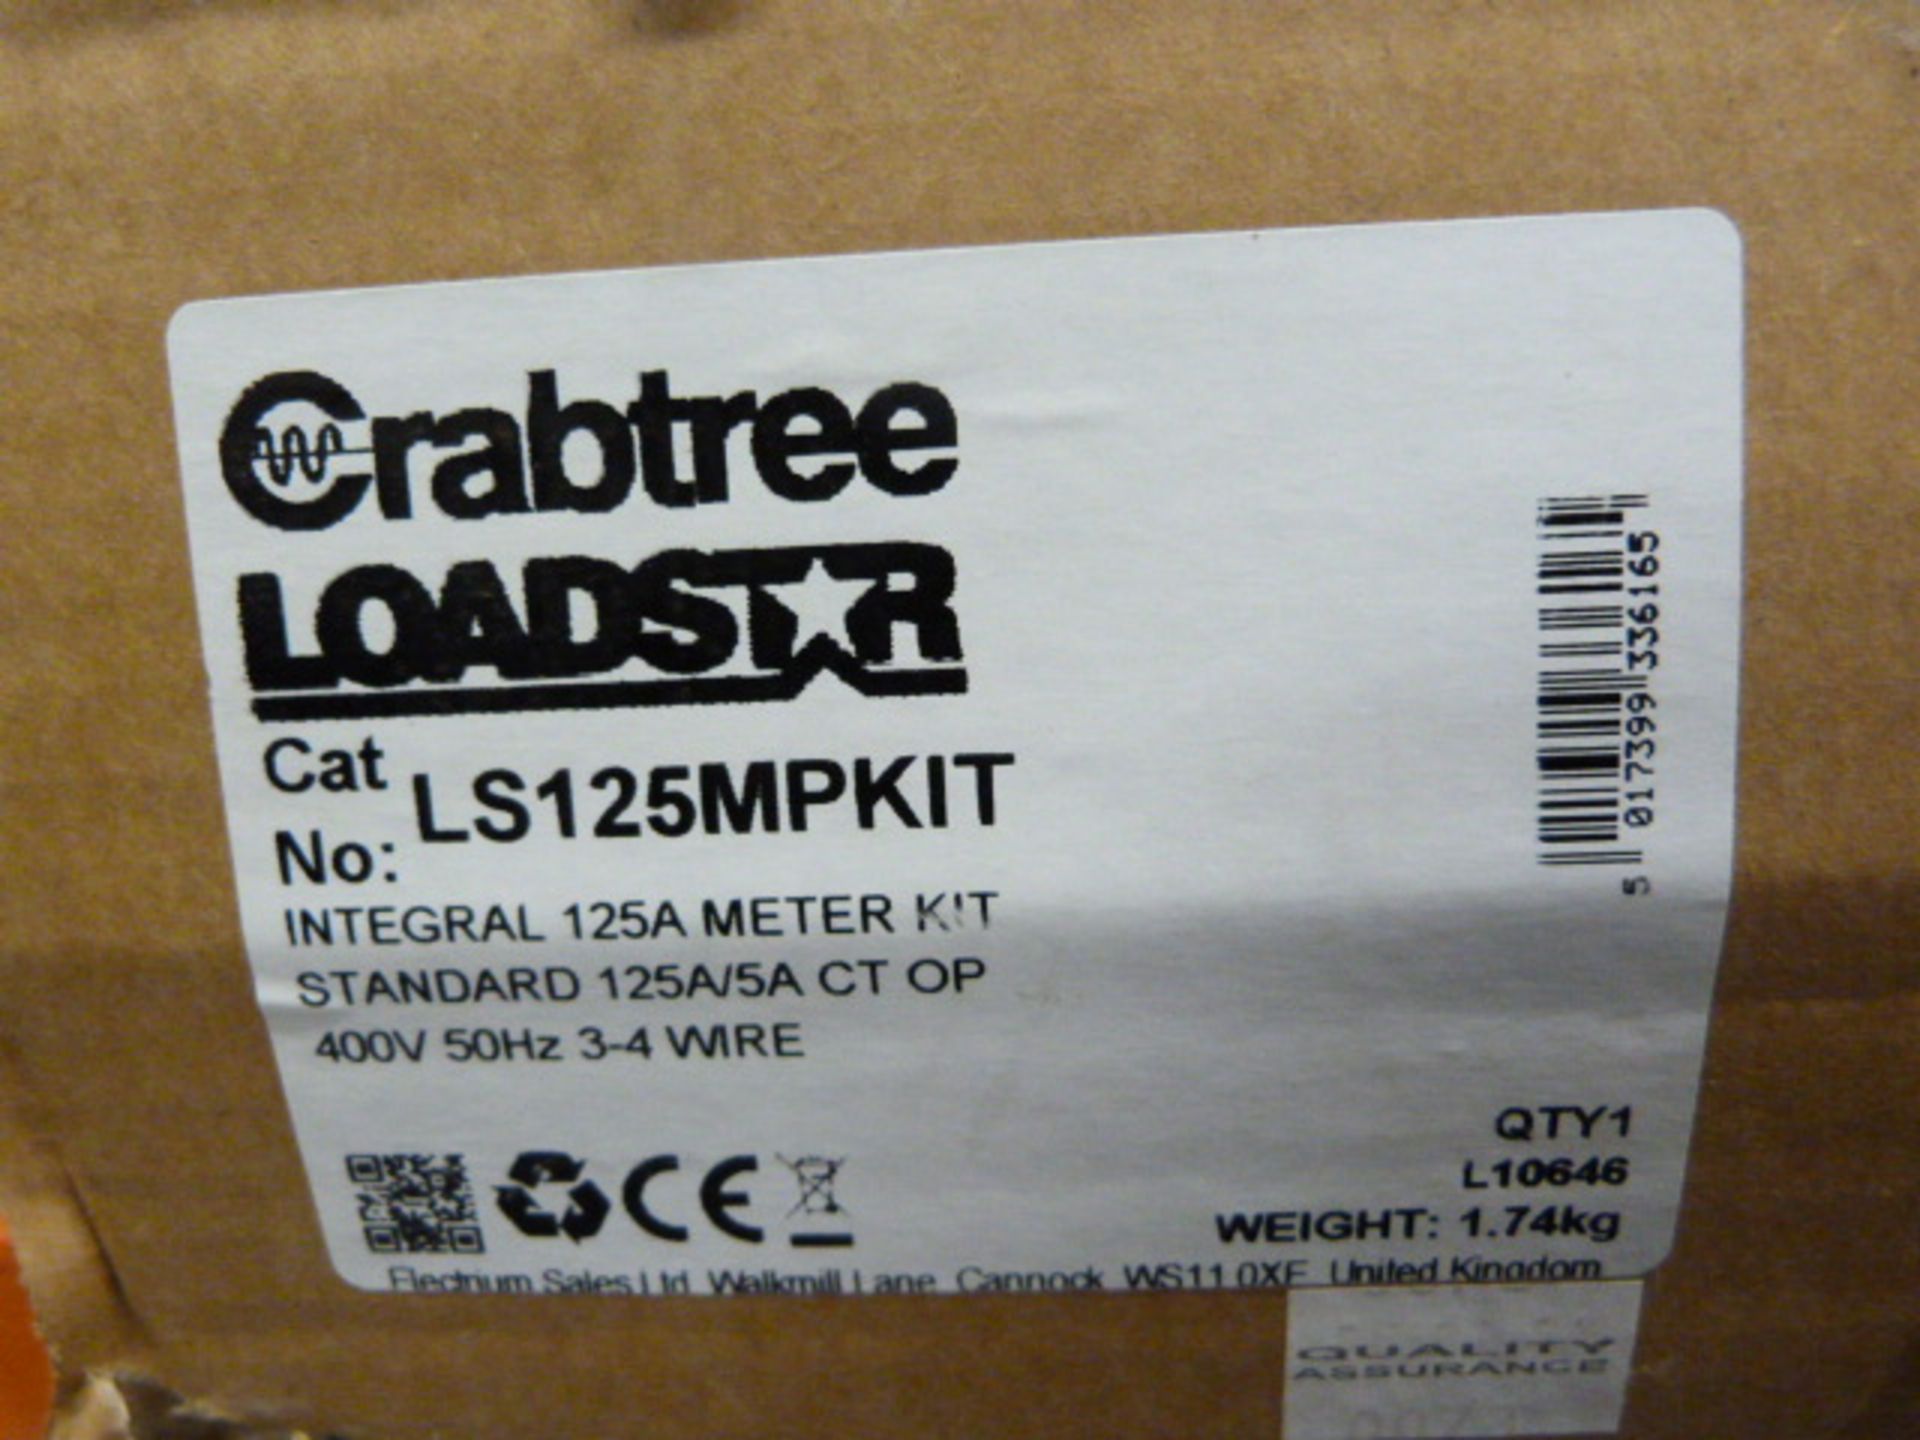 Ten LS125 MP Kit Meter Kits - Image 2 of 2